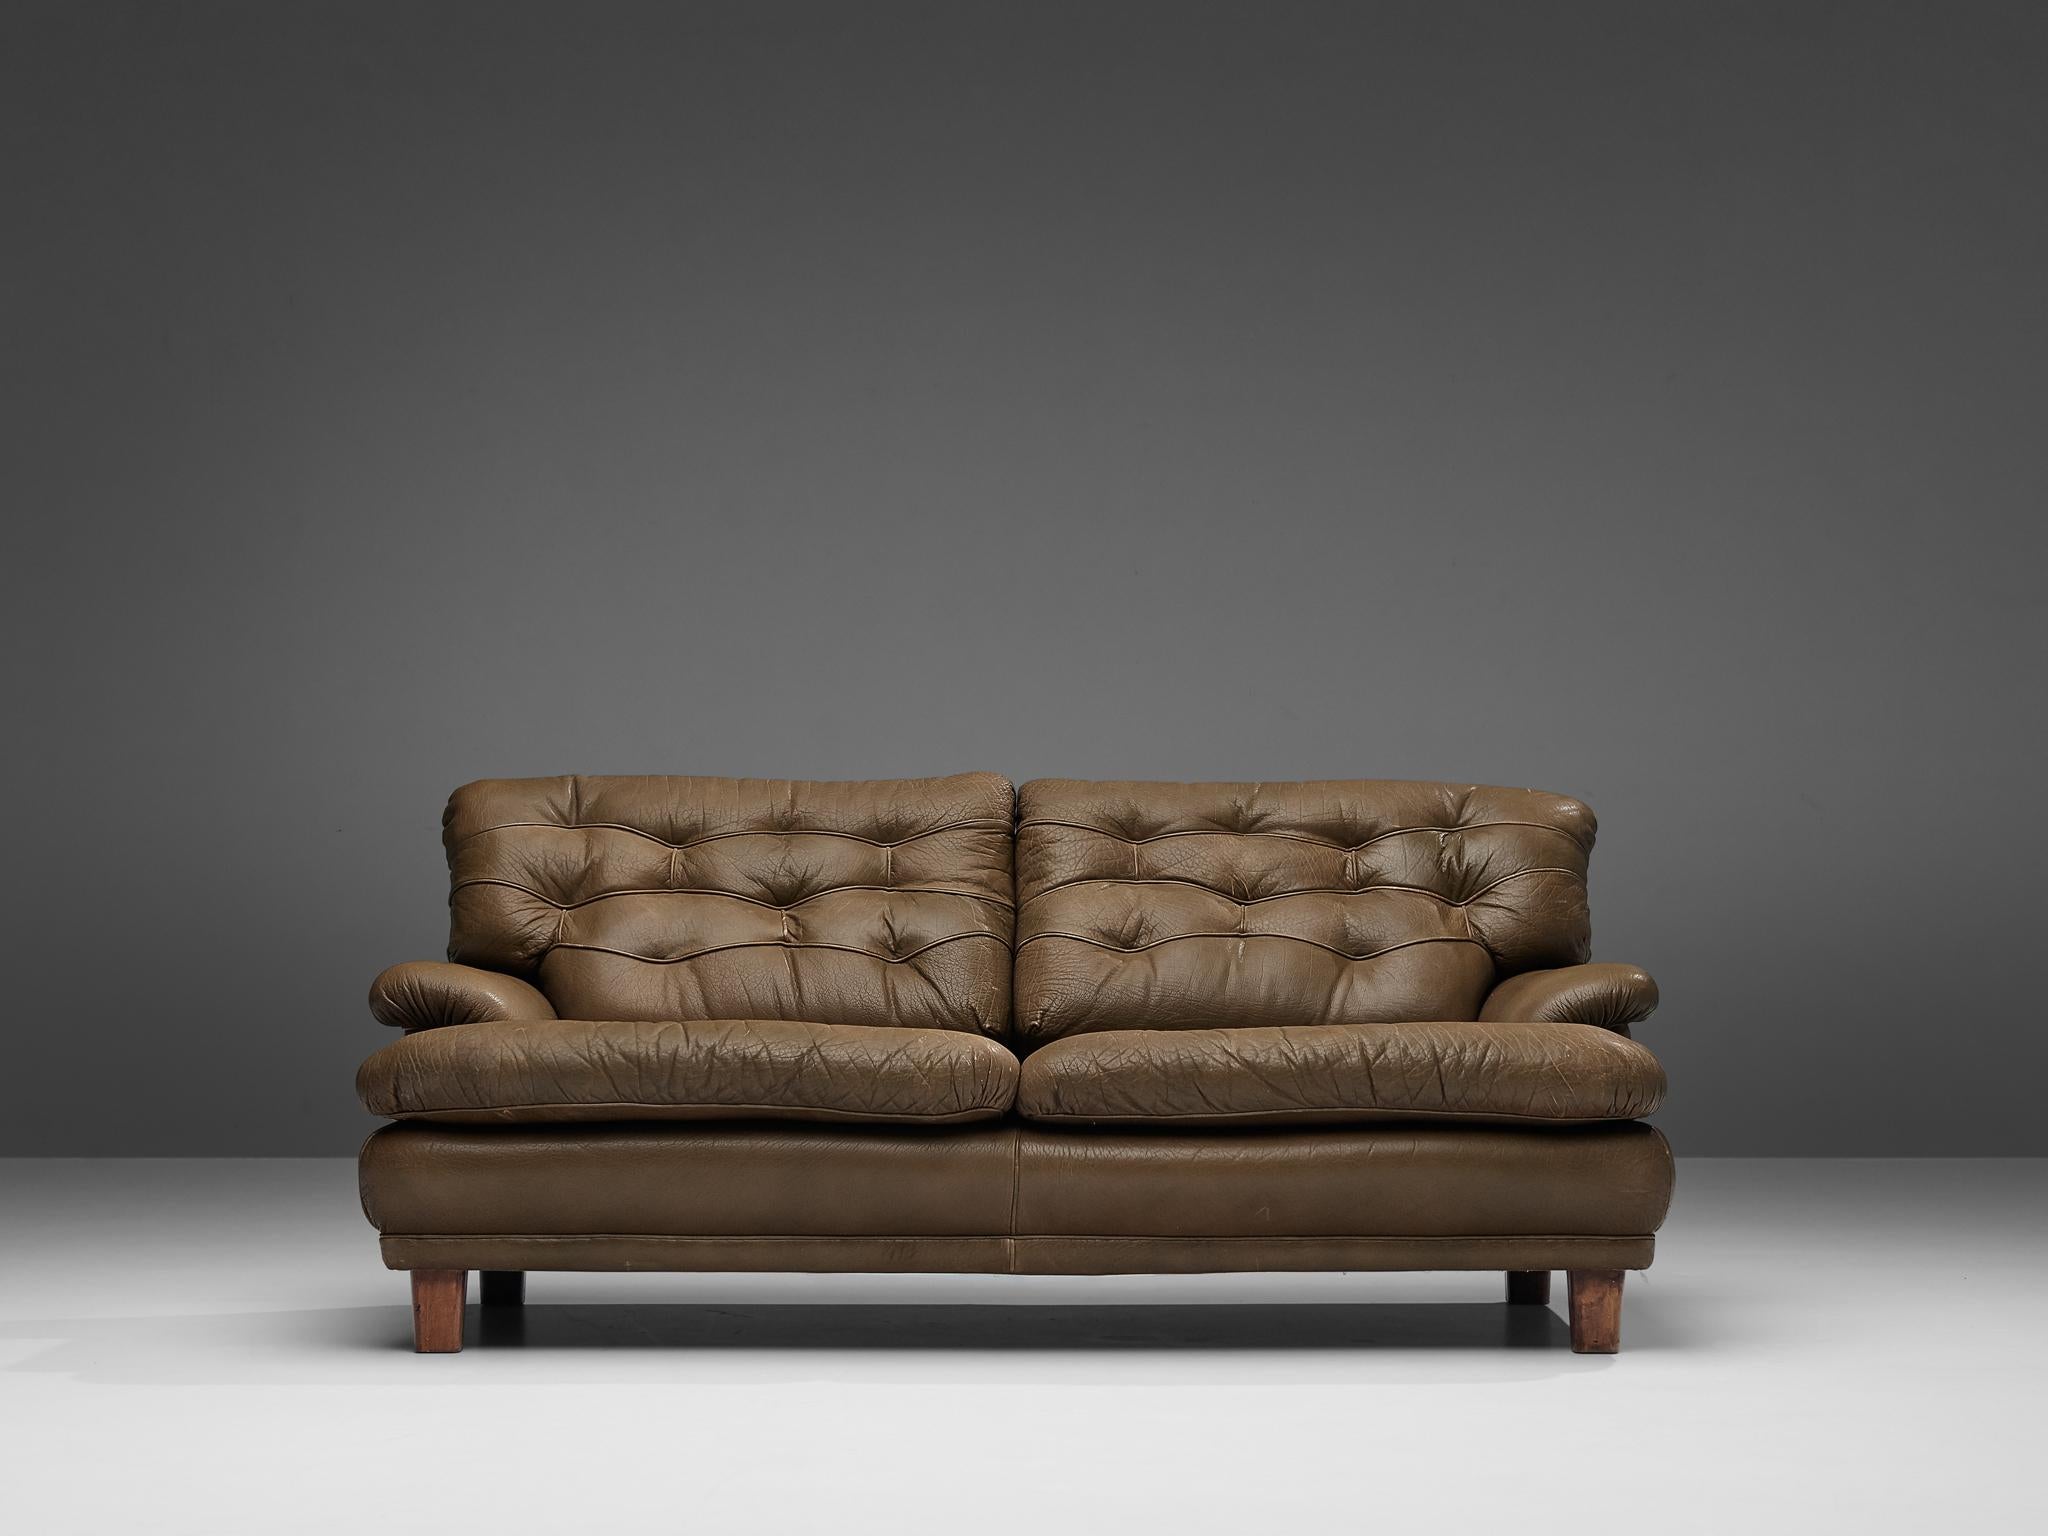 Arne Norell, Sofa, Leder, Holz, Schweden, um 1964.

Dieses Sofa ist raffiniert, modern und hat einen robusten Touch. Ein echtes schwedisches und Norells Design. Er ist aus Leder gefertigt und hat vier kubische Holzbeine. Diese Beine bilden eine